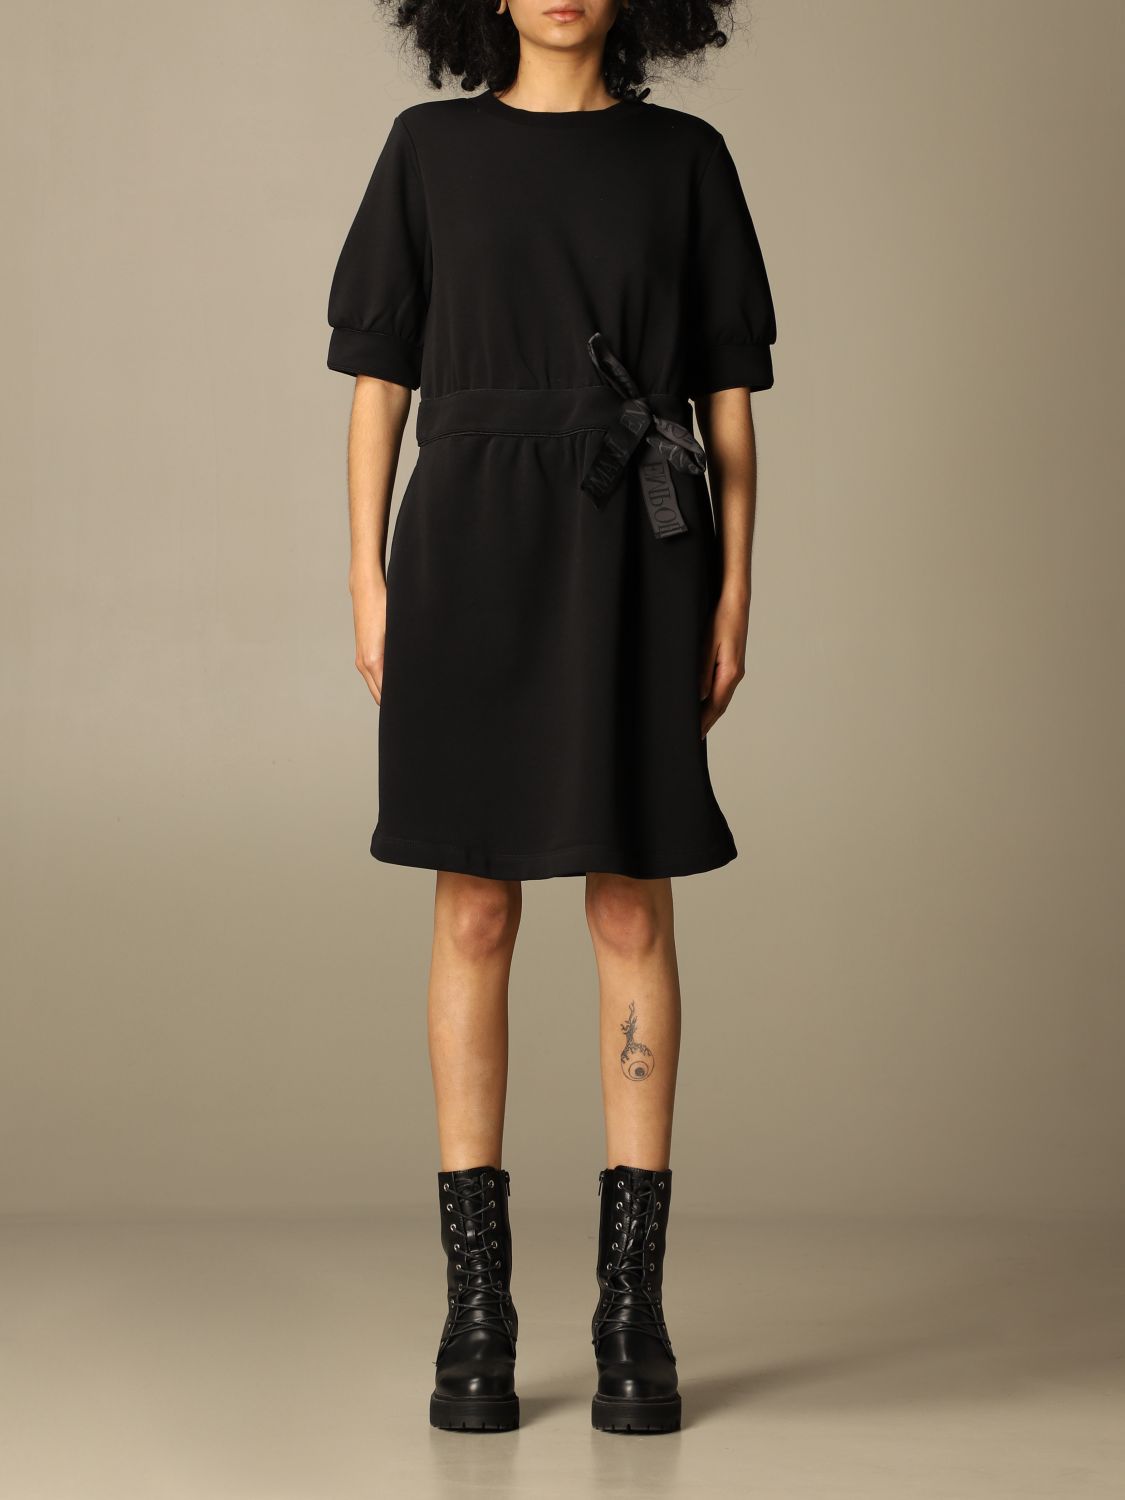 EMPORIO ARMANI: short dress in cotton blend - Black | Emporio Armani ...